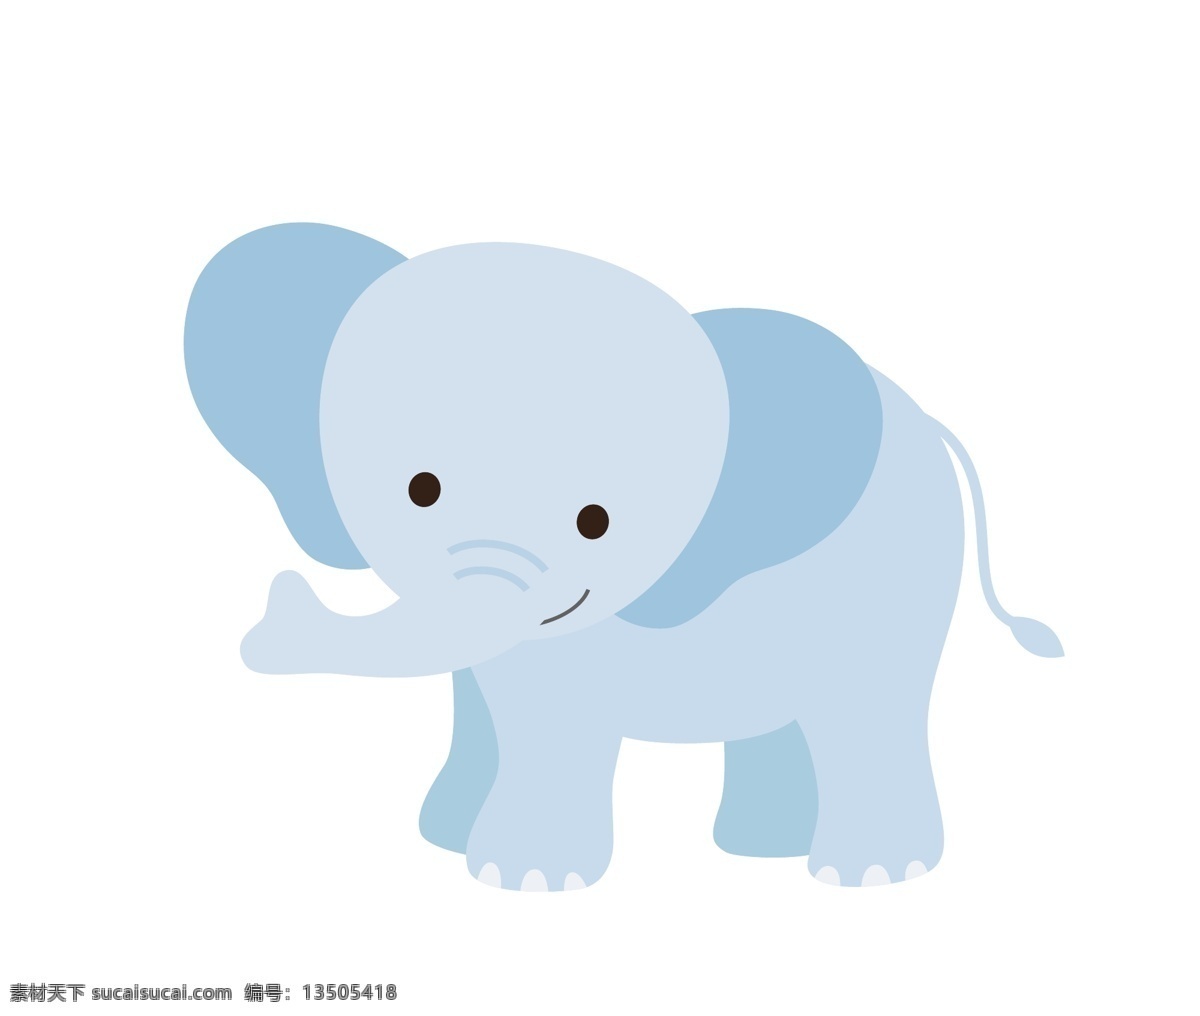 卡通大象 卡通 动物 矢量图 可爱 图 矢量素材 小动物 矢量 白色 卡通小动物 各类卡通动物 百款卡通动物